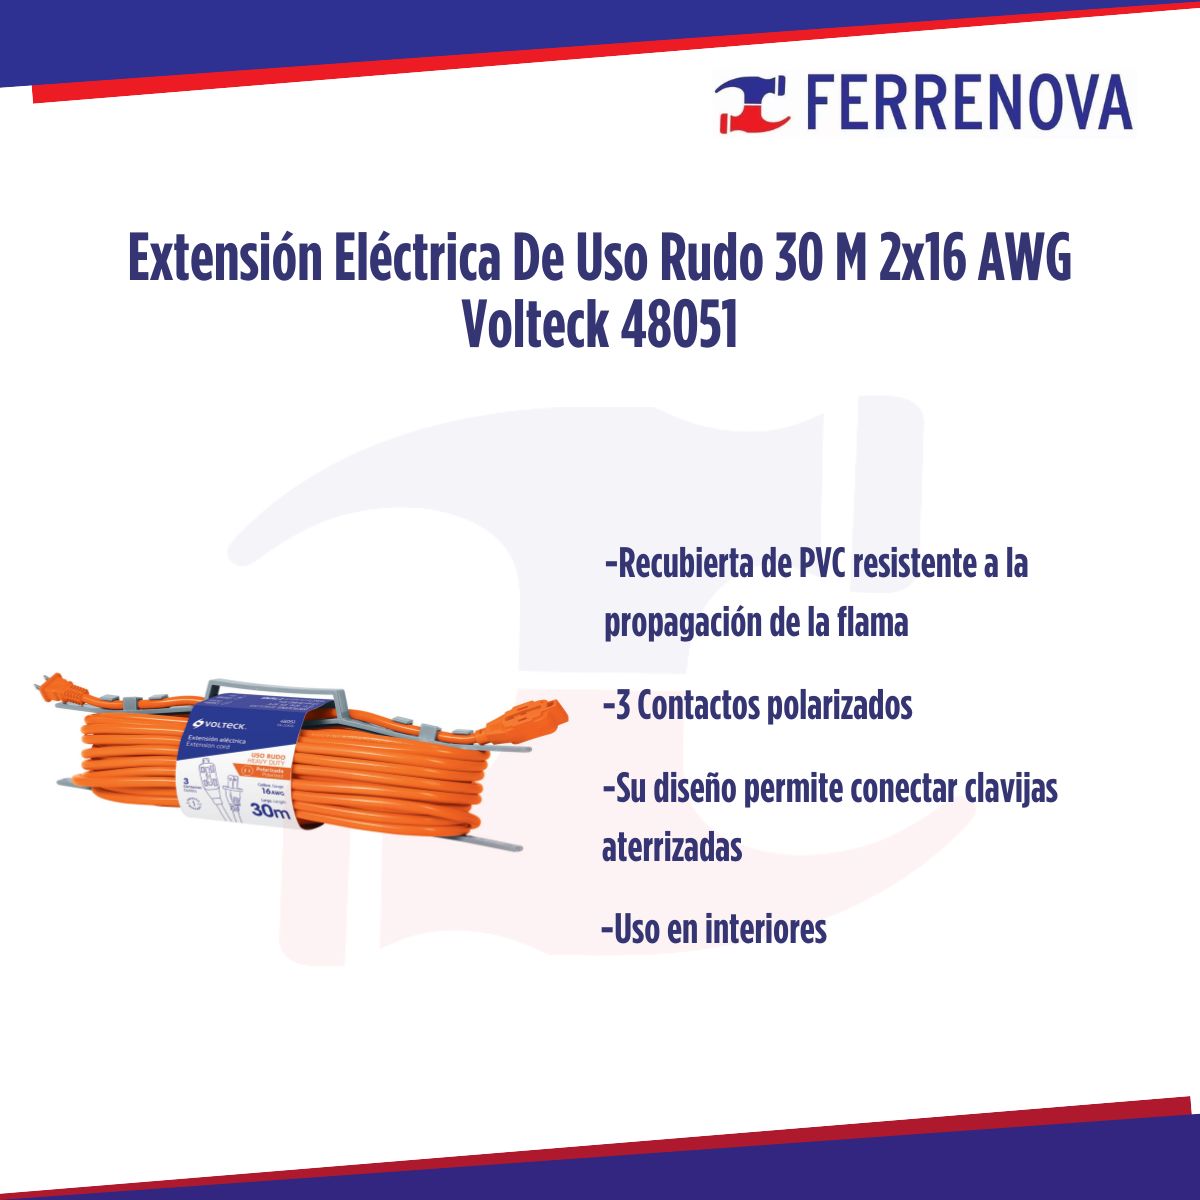 Extensión Eléctrica De Uso Rudo 30 M 2x16 AWG Volteck 48051